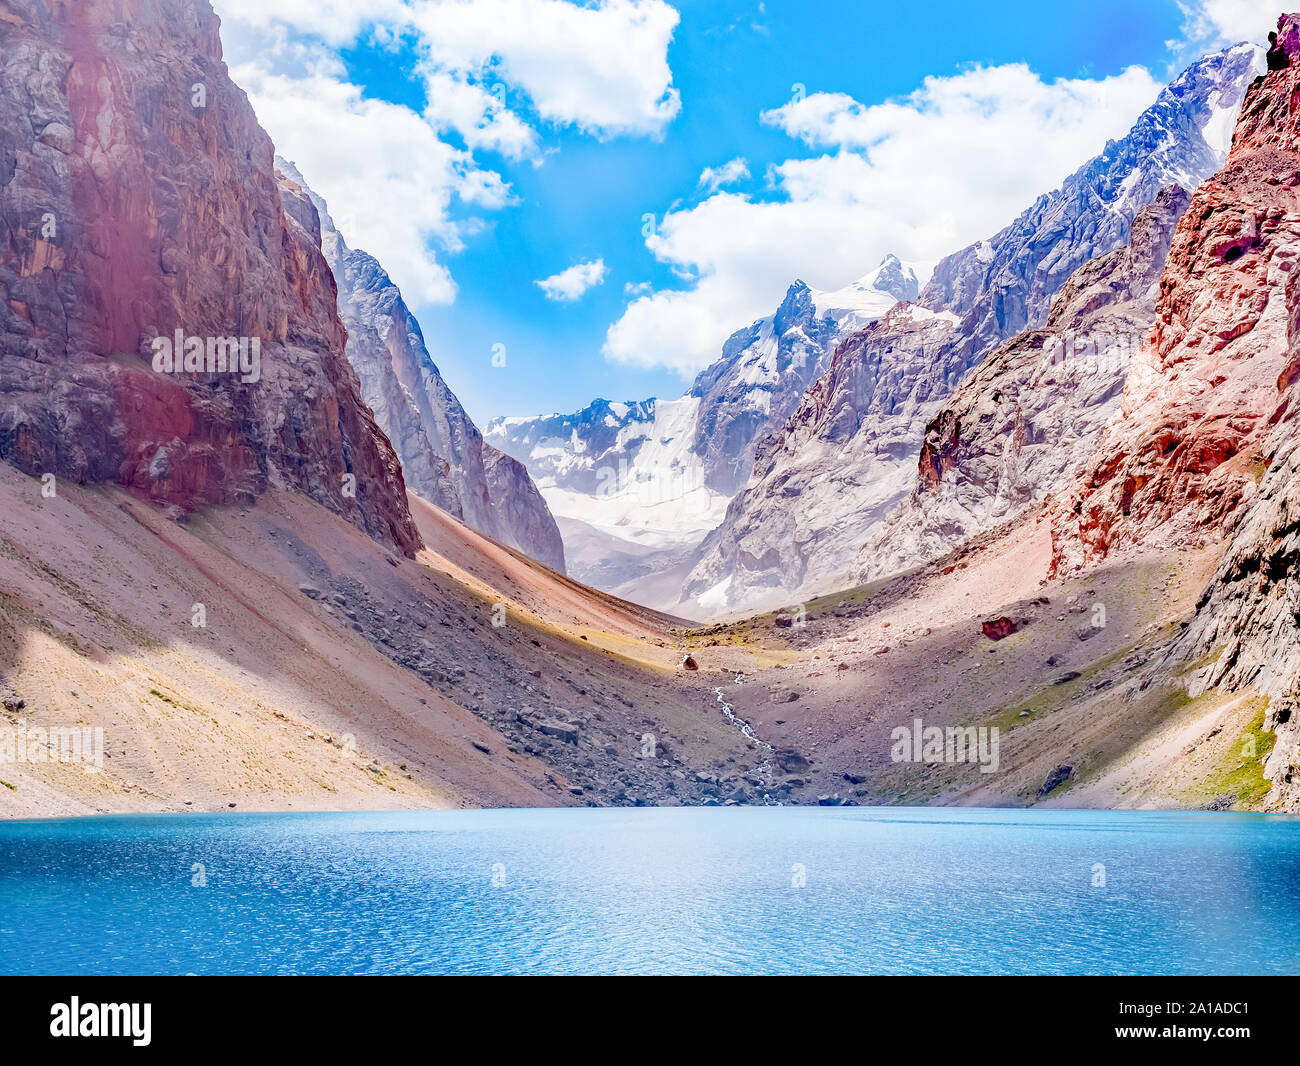 Big Alo Bergsee mit türkisfarbenem Wasser, in der Sonne auf rocky mountain Hintergrund. Die Fann Mountains, Tadschikistan, Zentralasien Stockfoto